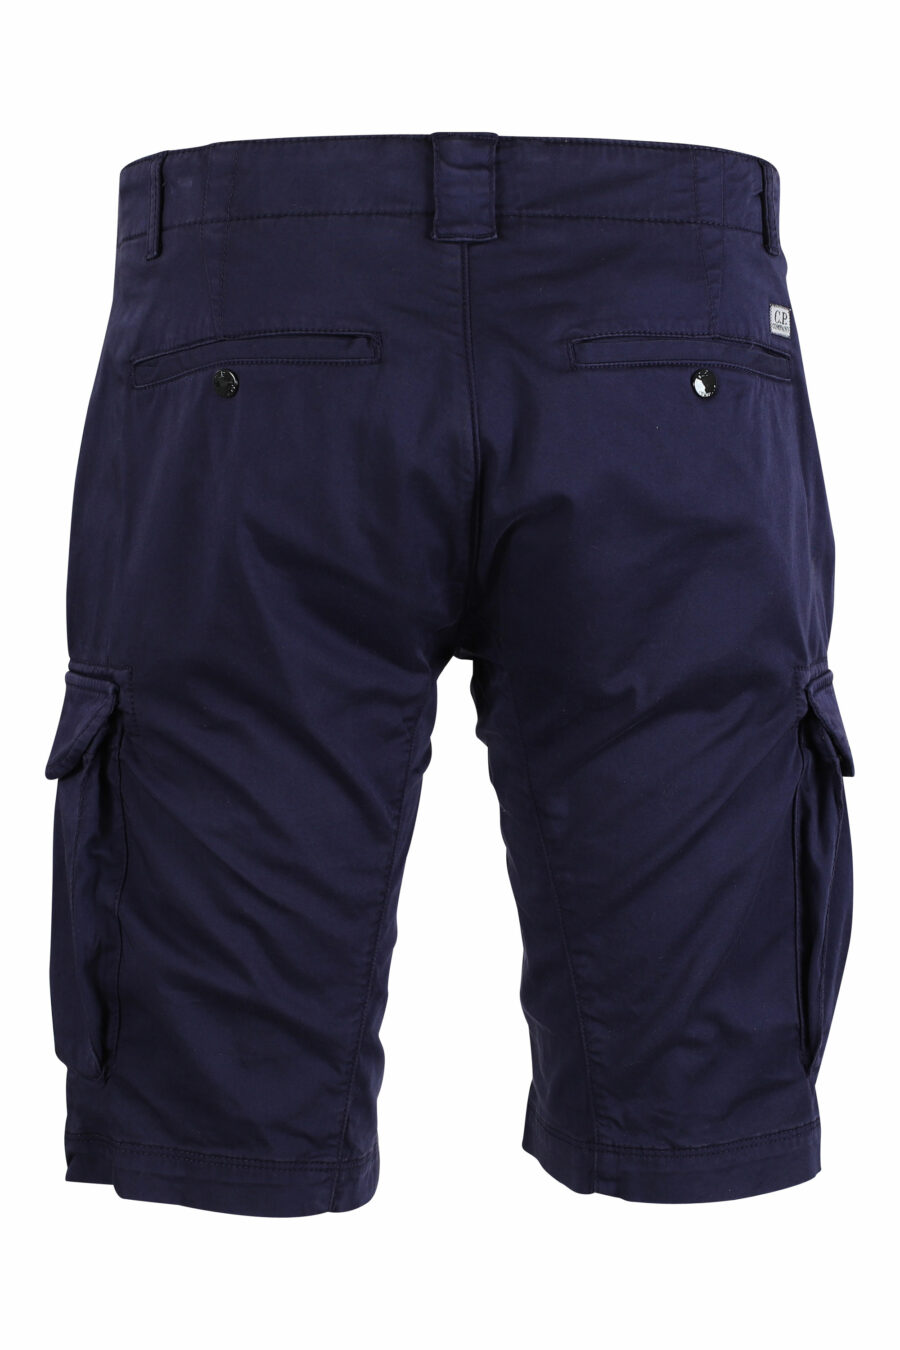 Pantalón corto azul oscuro estilo cargo con minilogo circular - IMG 9492